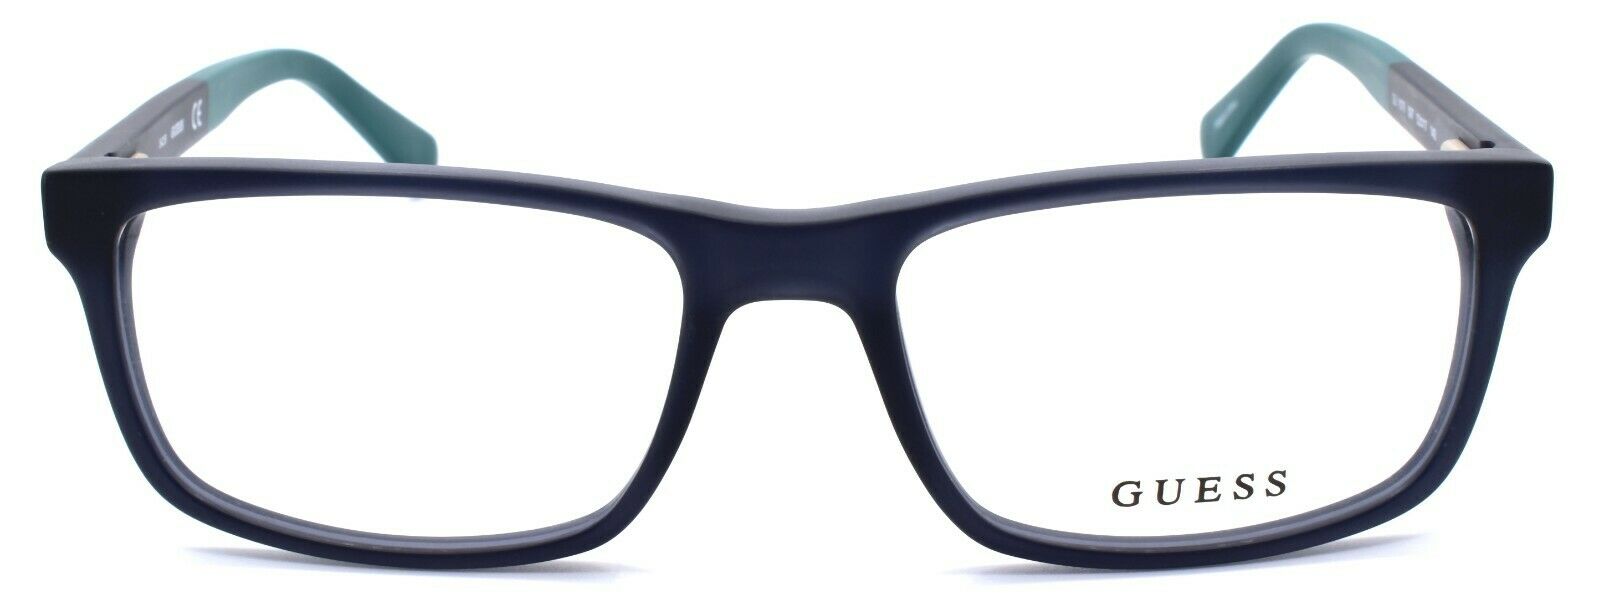 2-GUESS GU1878 097 Men's Eyeglasses Frames 53-17-140 Matte Dark Green-664689744459-IKSpecs